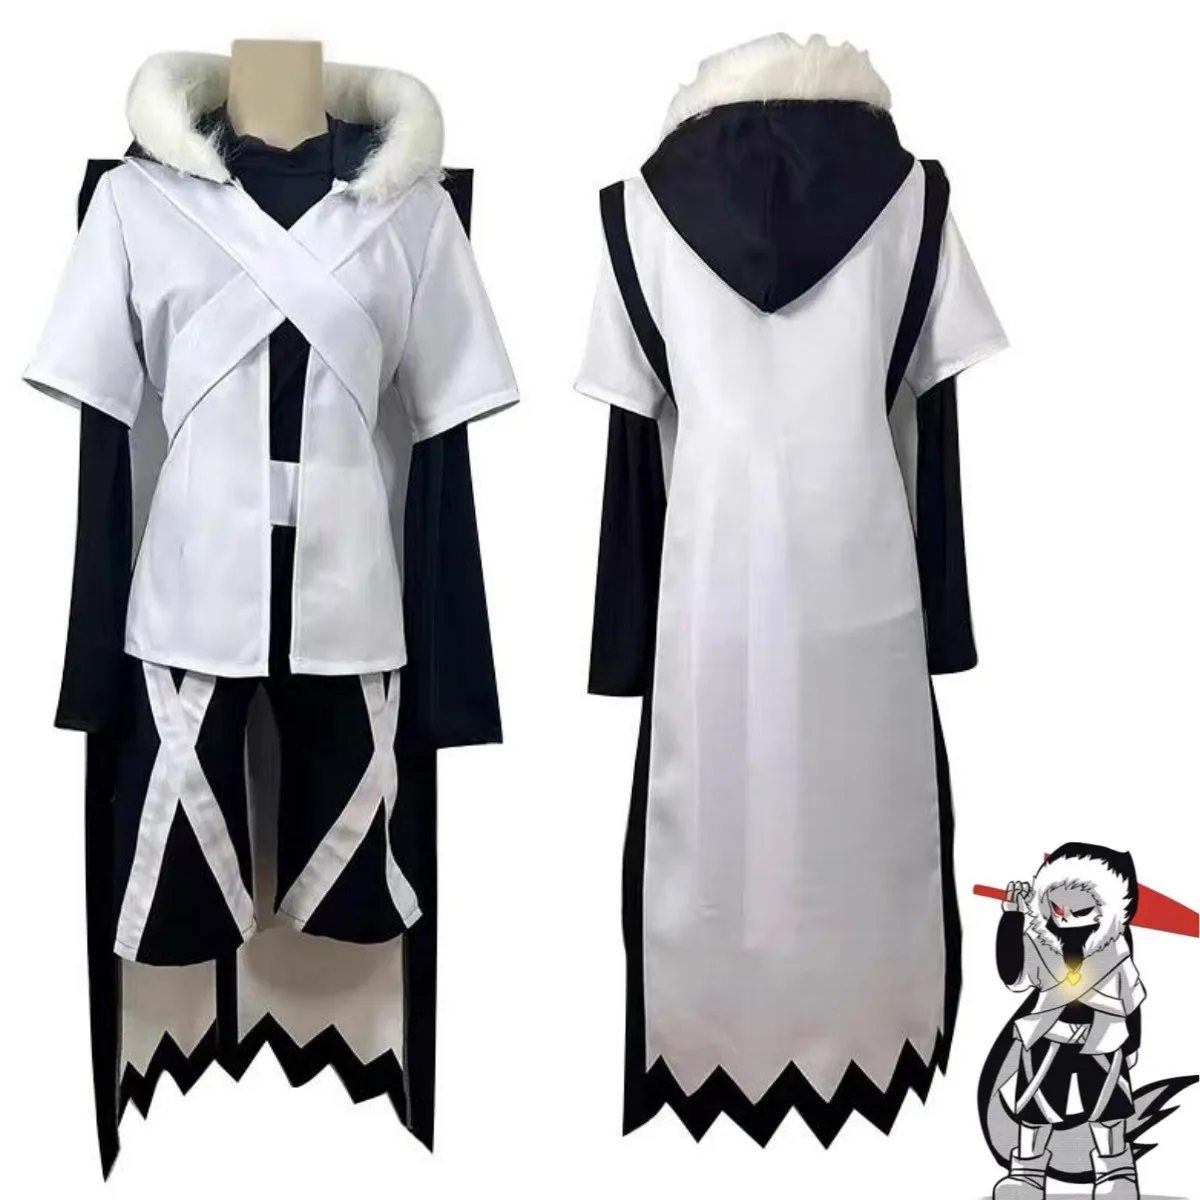 

Anime Game Undertale XTALE Cross Sans Cosplay Costume White Cloak Cape Combats Uniform Adult Man Woman Halloween Party Suit